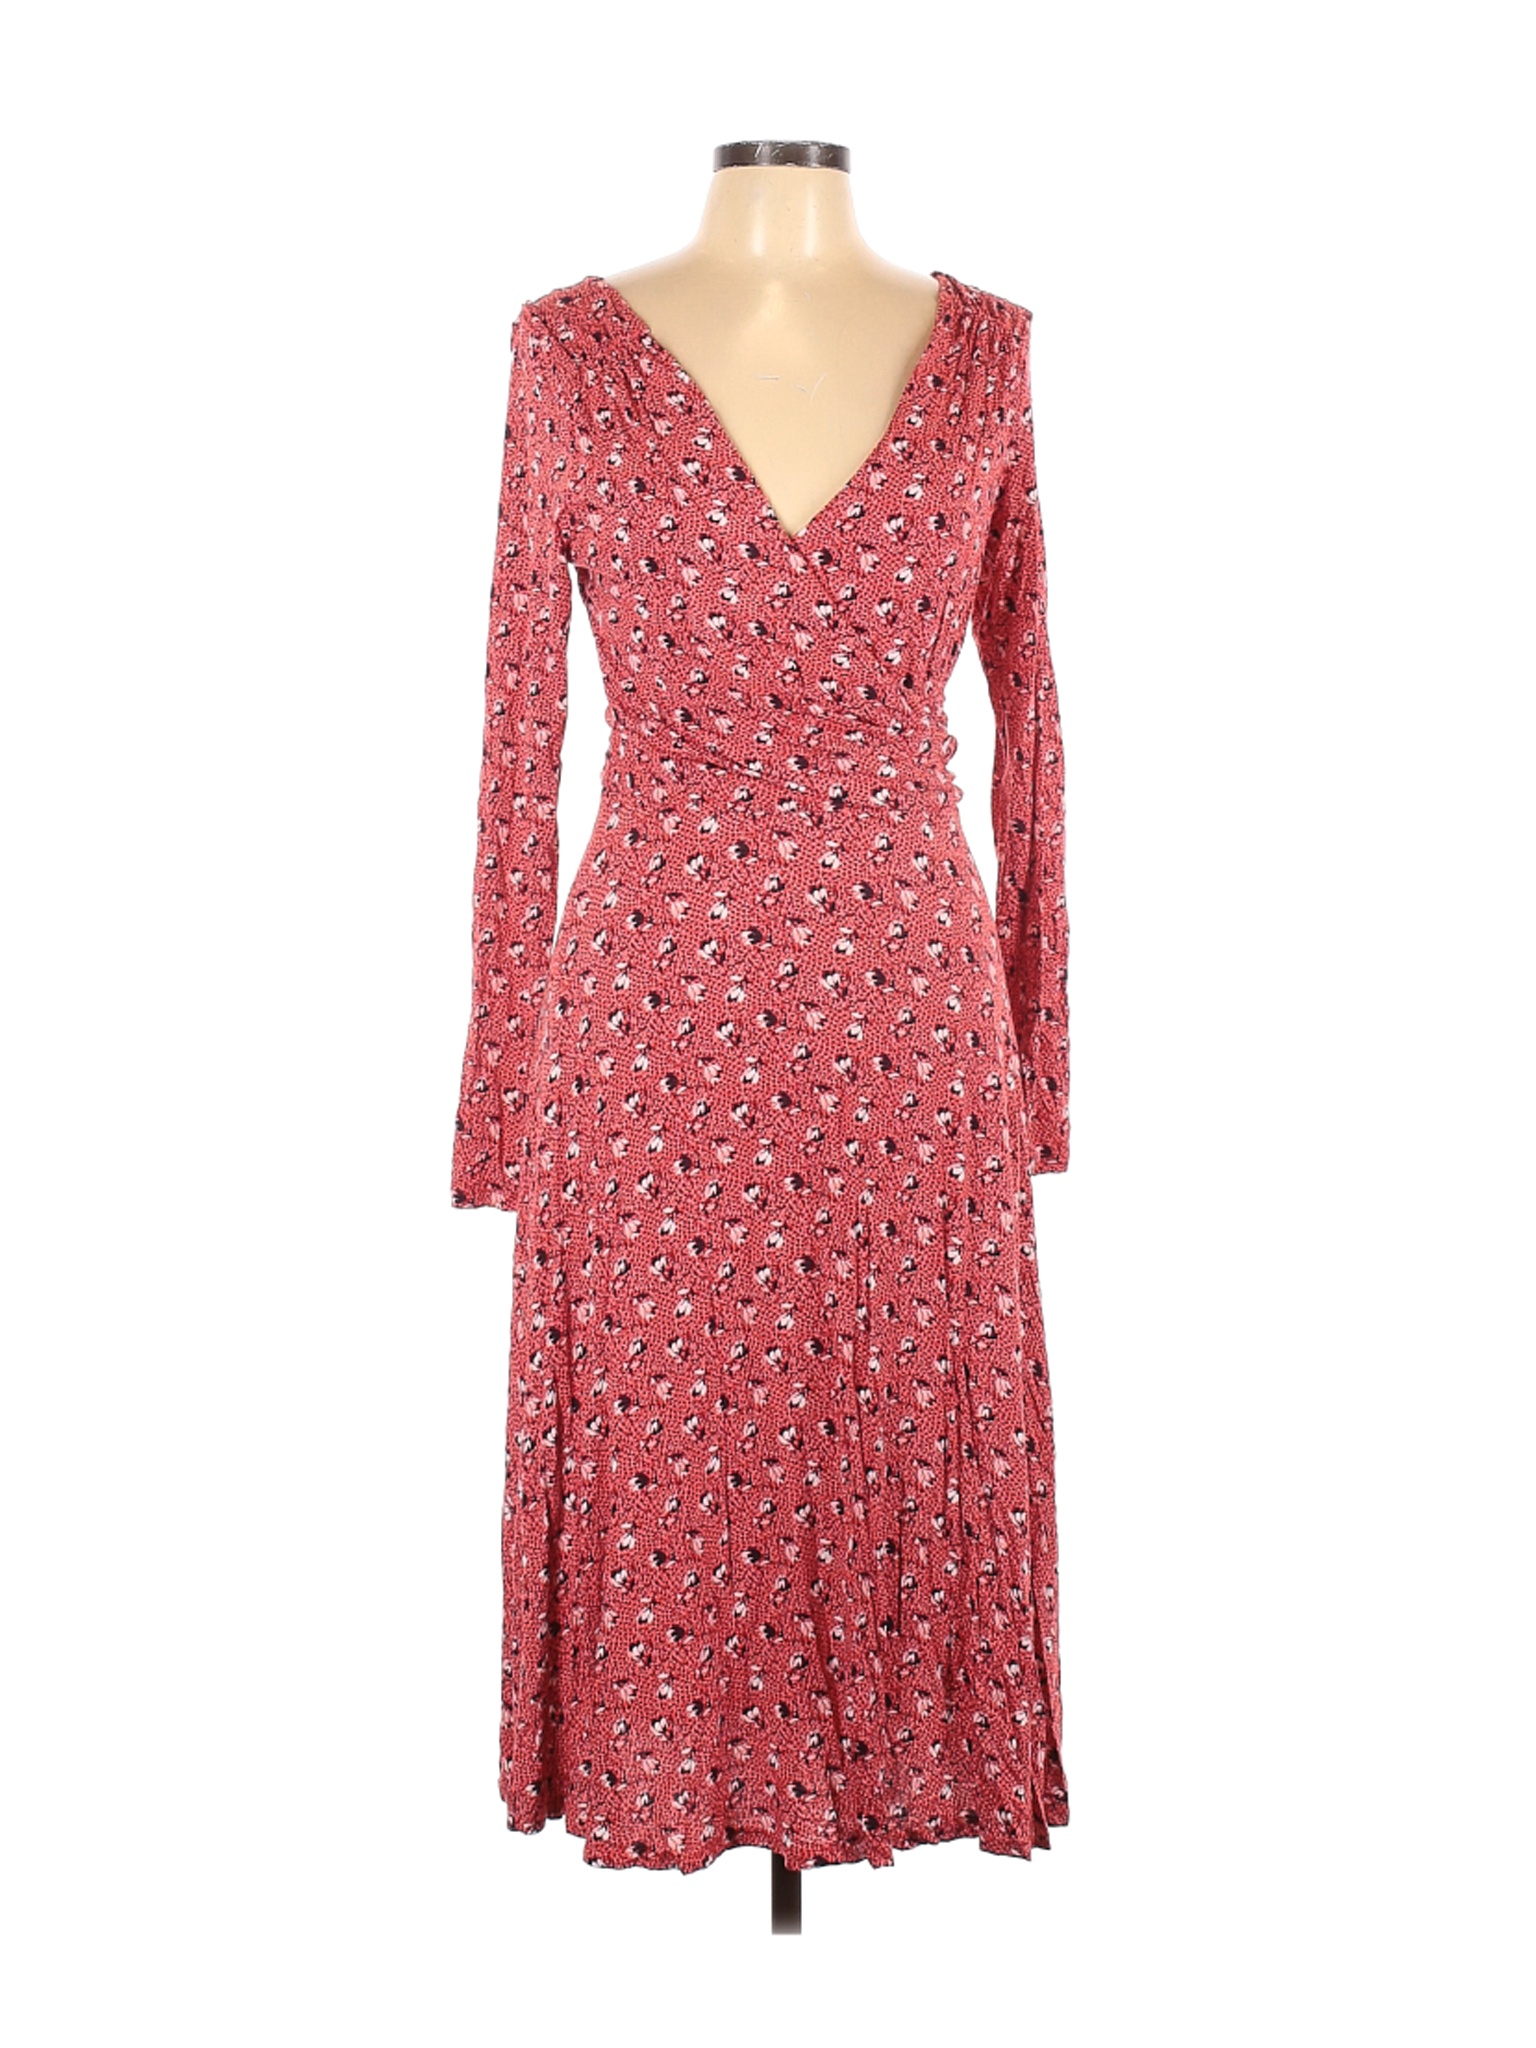 Boden Women Pink Casual Dress 10 | eBay